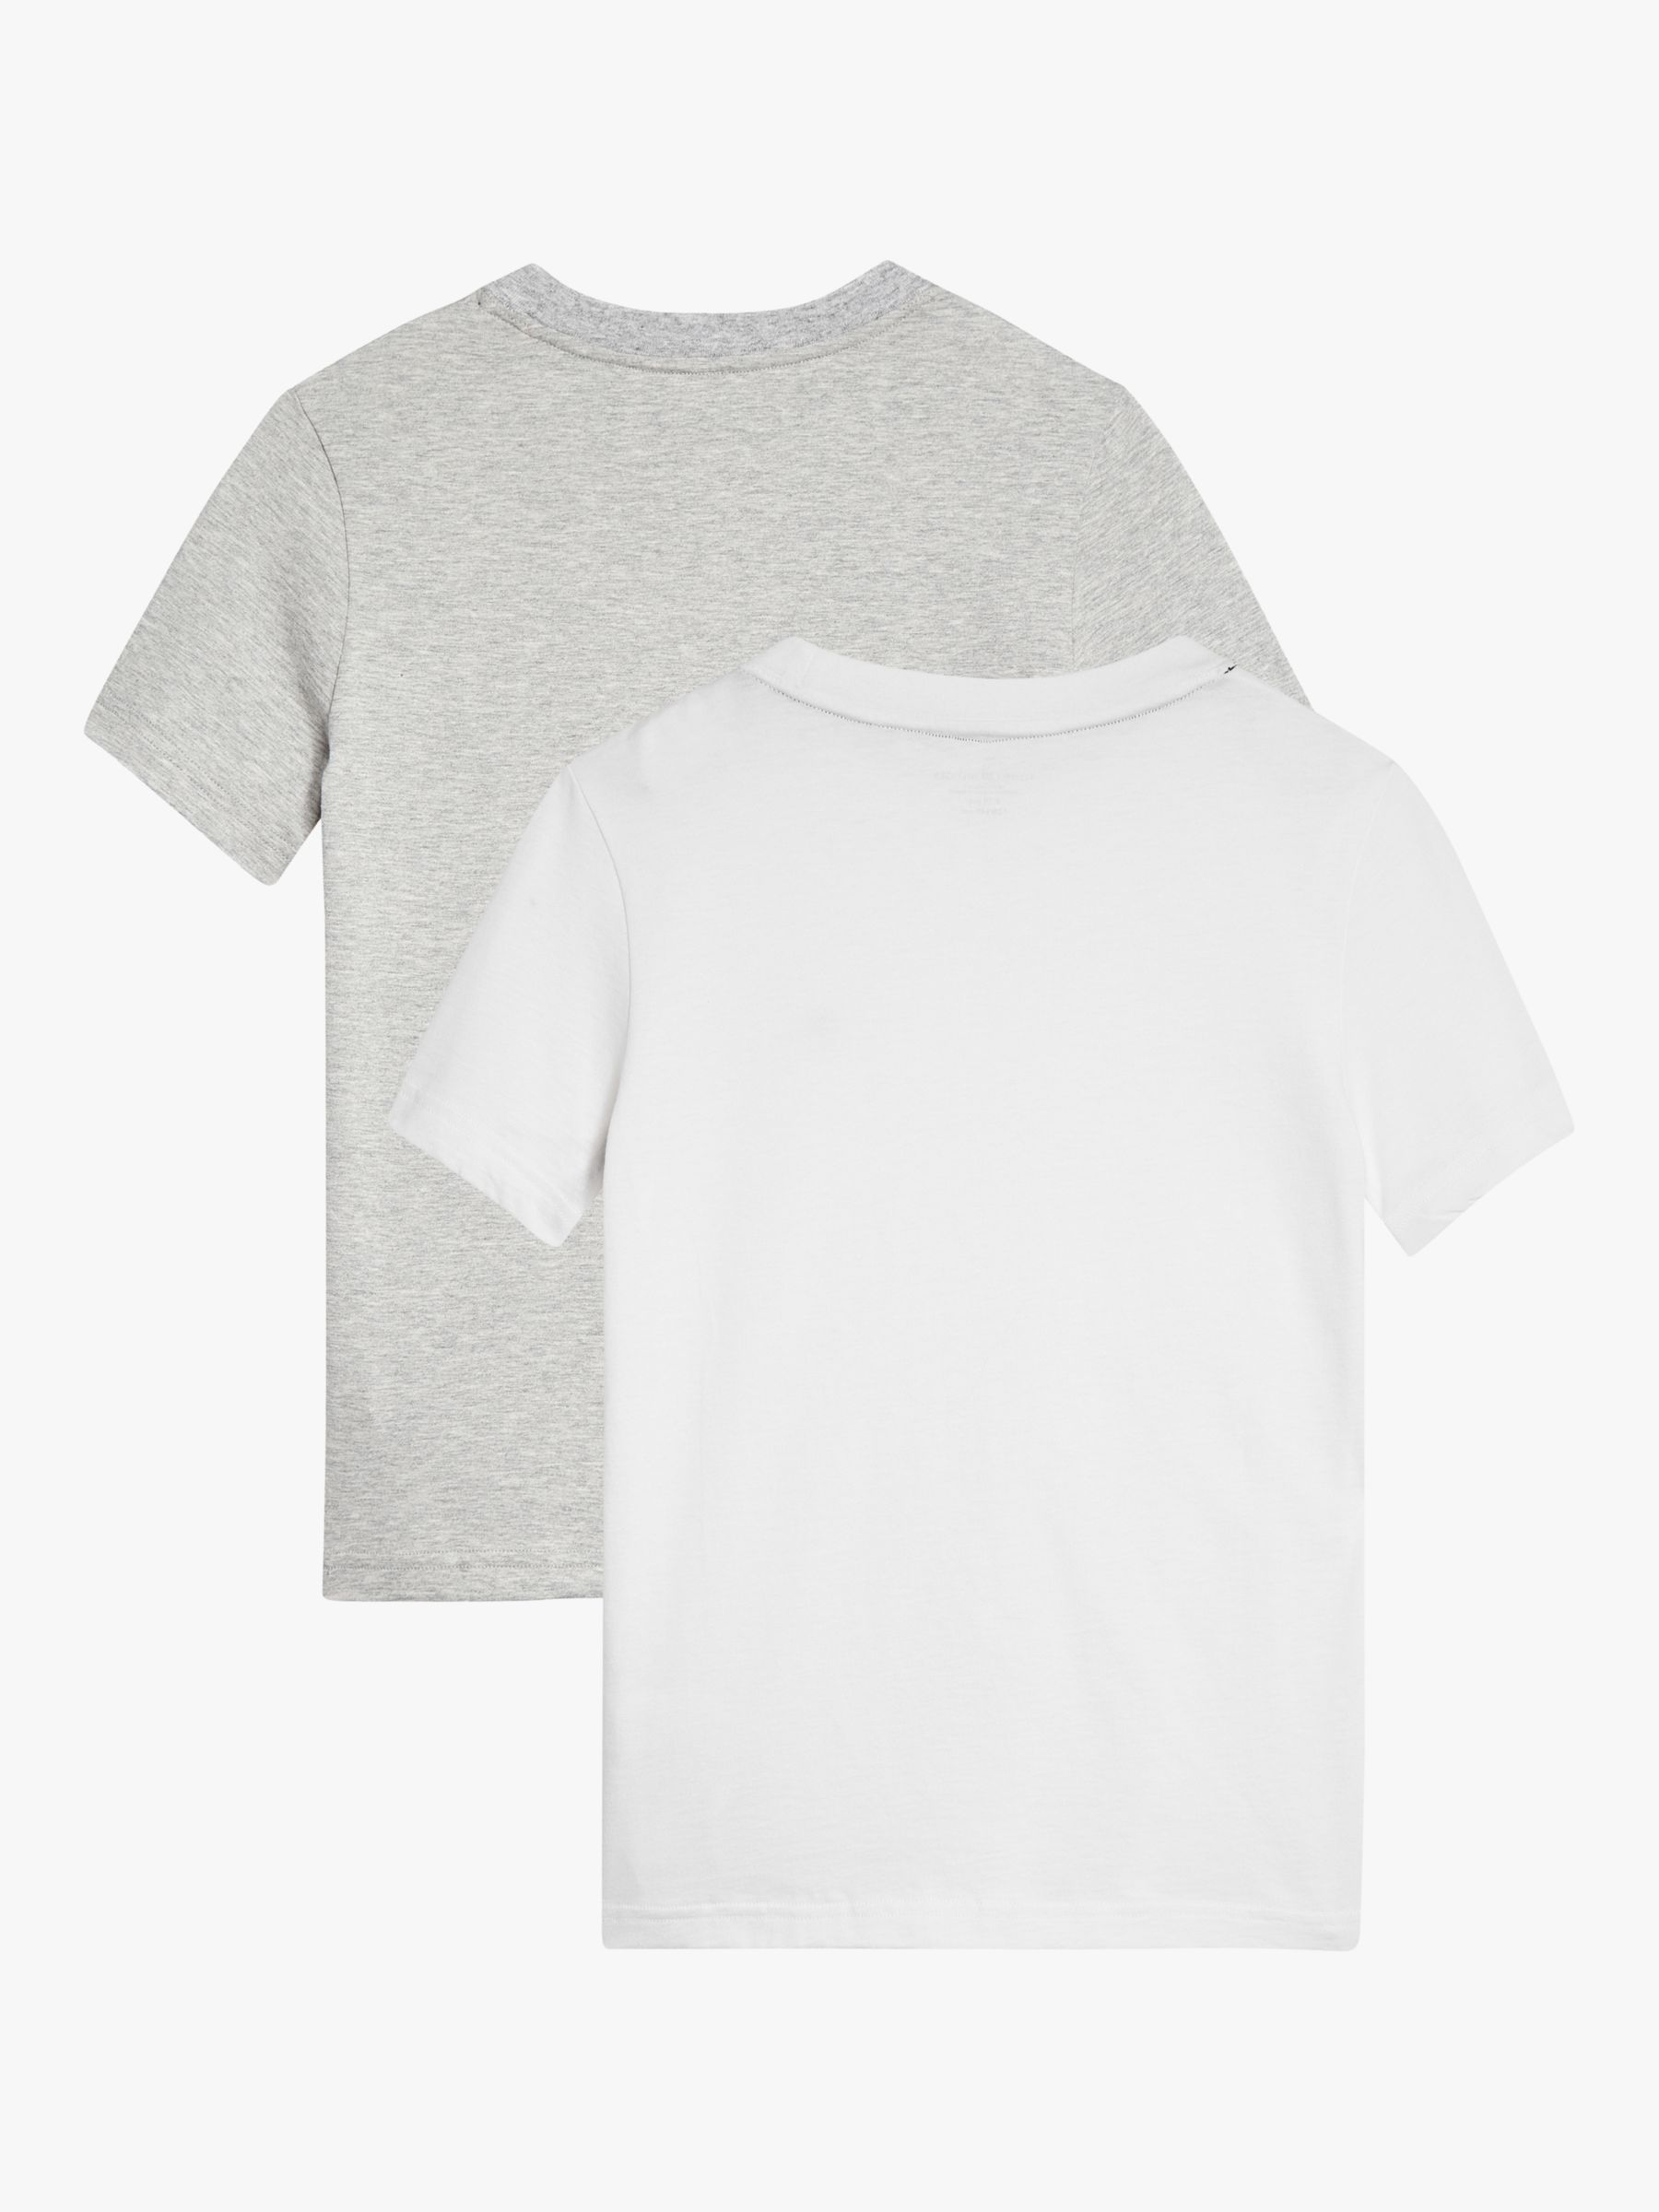 Buy Tommy Hilfiger Kids' The Original Plain Logo T-Shirts, Pack of 2 Online at johnlewis.com